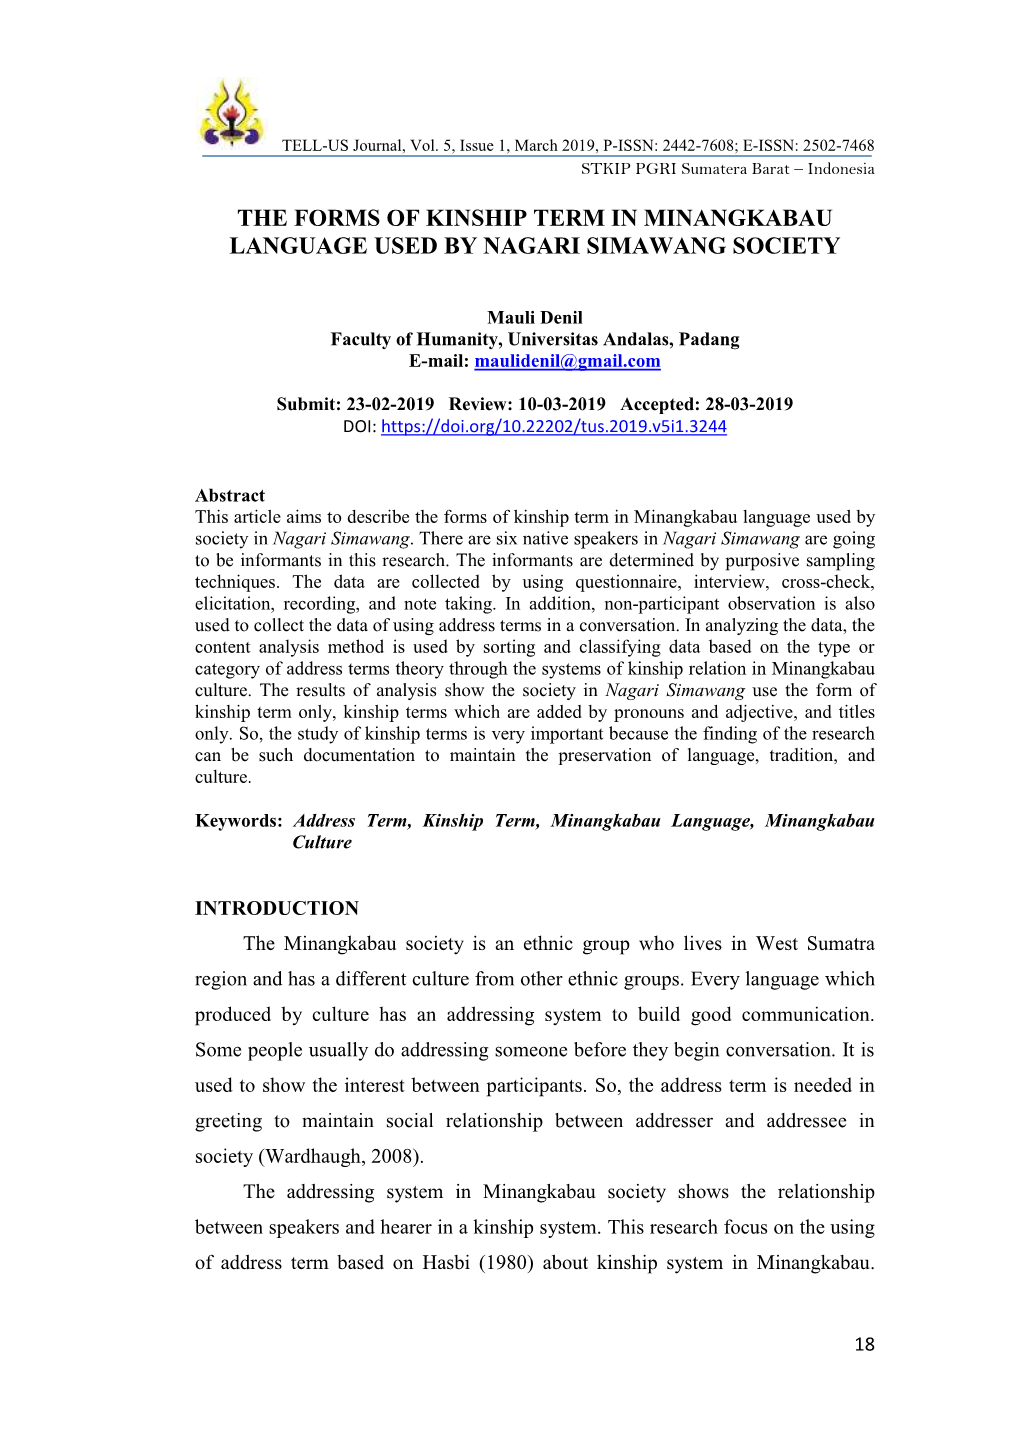 The Forms of Kinship Term in Minangkabau Language Used by Nagari Simawang Society